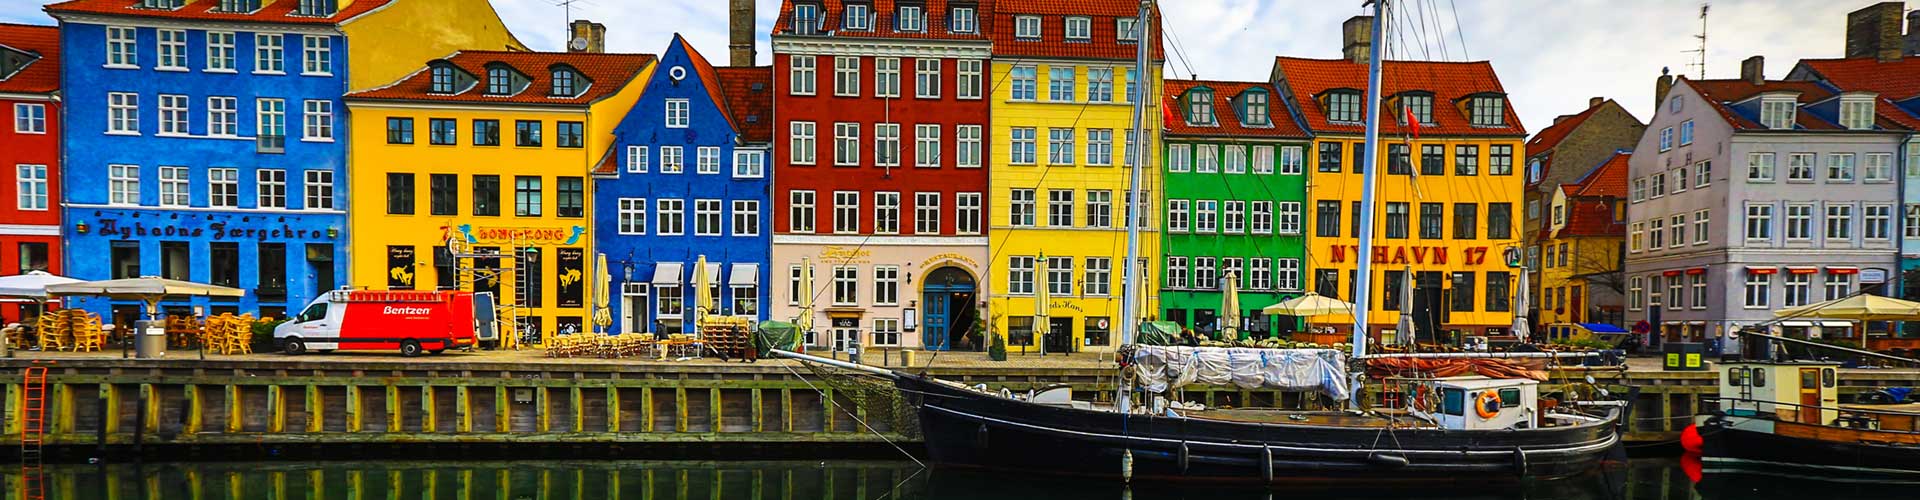 Nyhavn, Copenhagen, Denmark